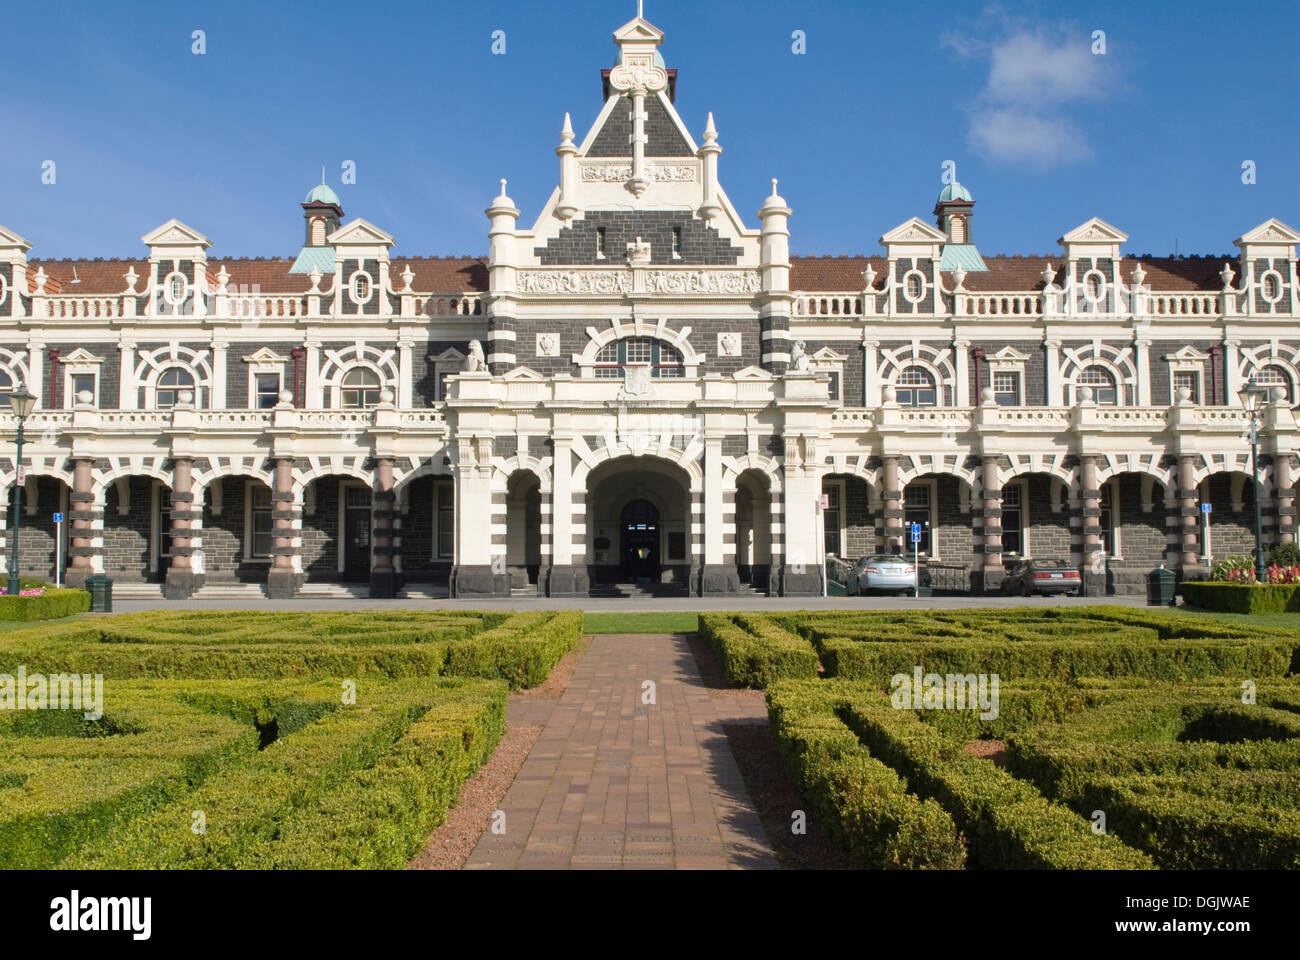 Gare ferroviaire historique construit dans un style néo-Renaissance, Dunedin, île du Sud, Nouvelle-Zélande Banque D'Images